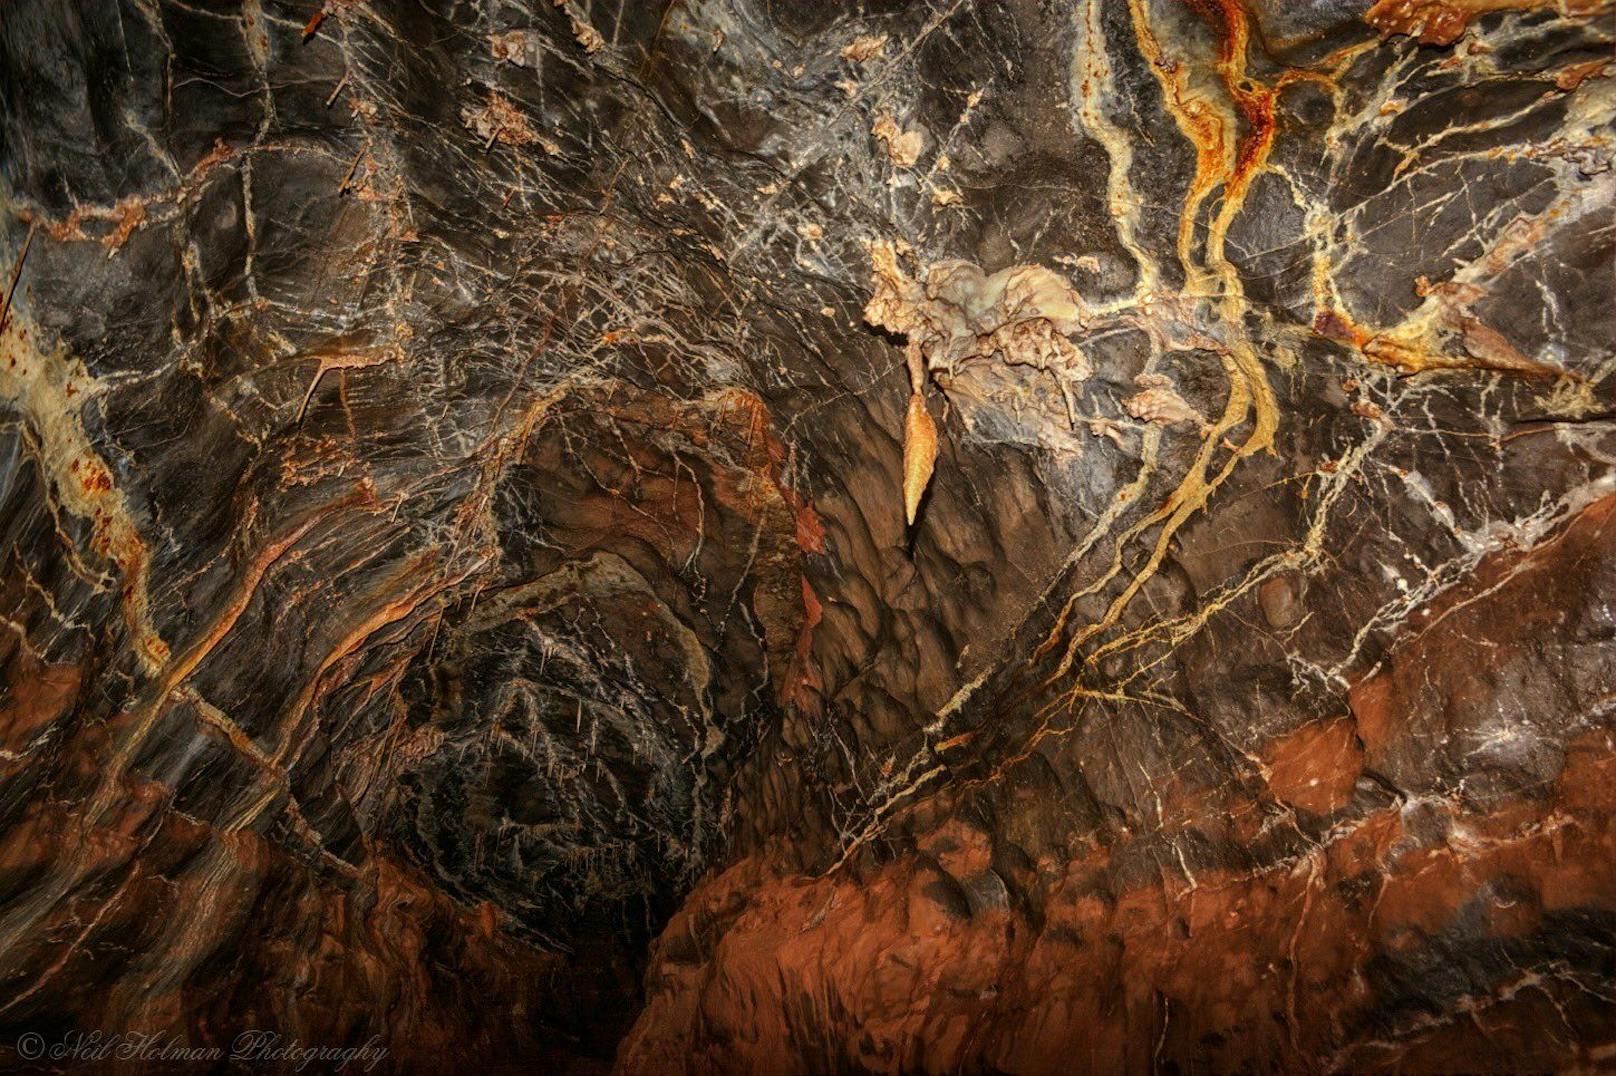 Ogof Ffynnon Ddu (walisisch für "Höhle der Schwarzen Quelle") ist ein über 60 Kilometer langes Höhlensystem. Hier steckte der Mann über 50 Stunden fest.